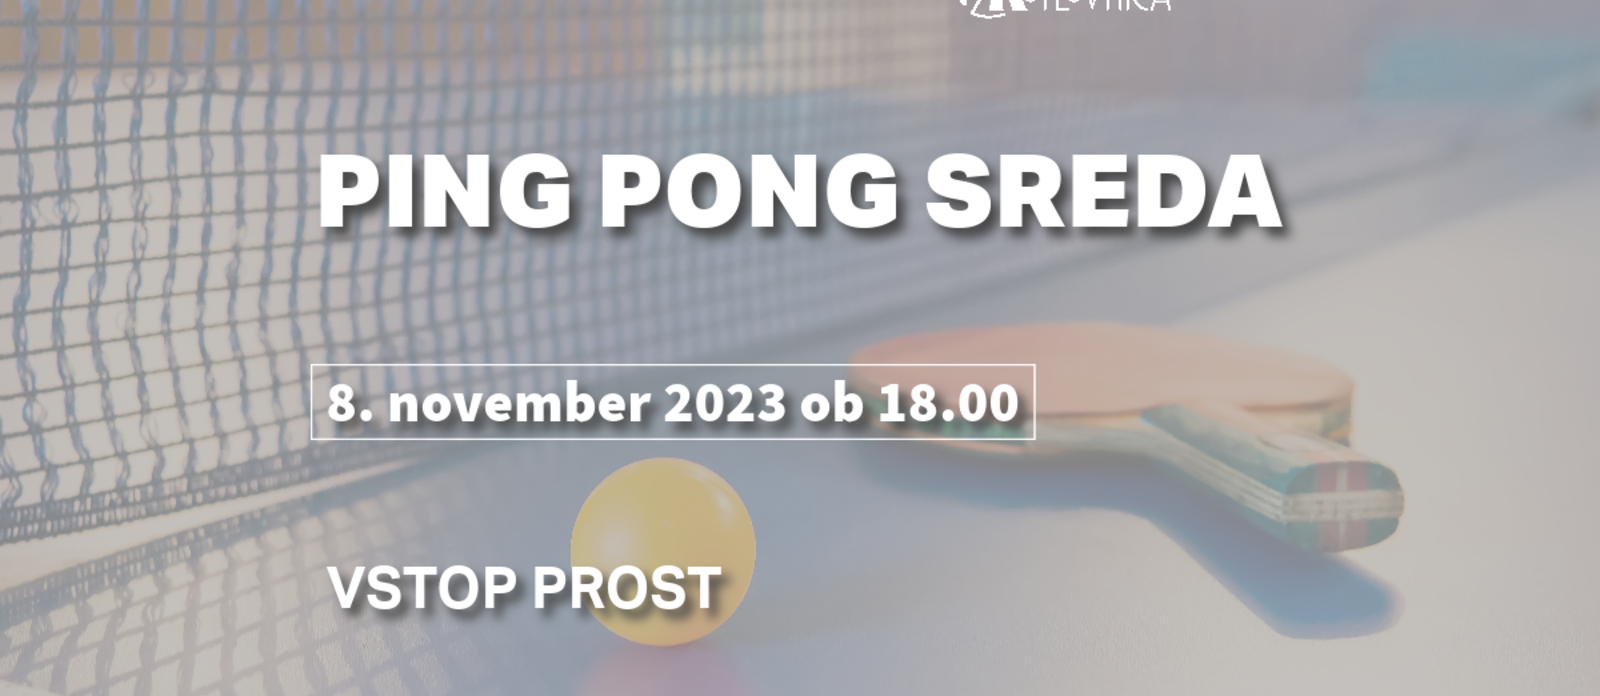 Ping pong sreda